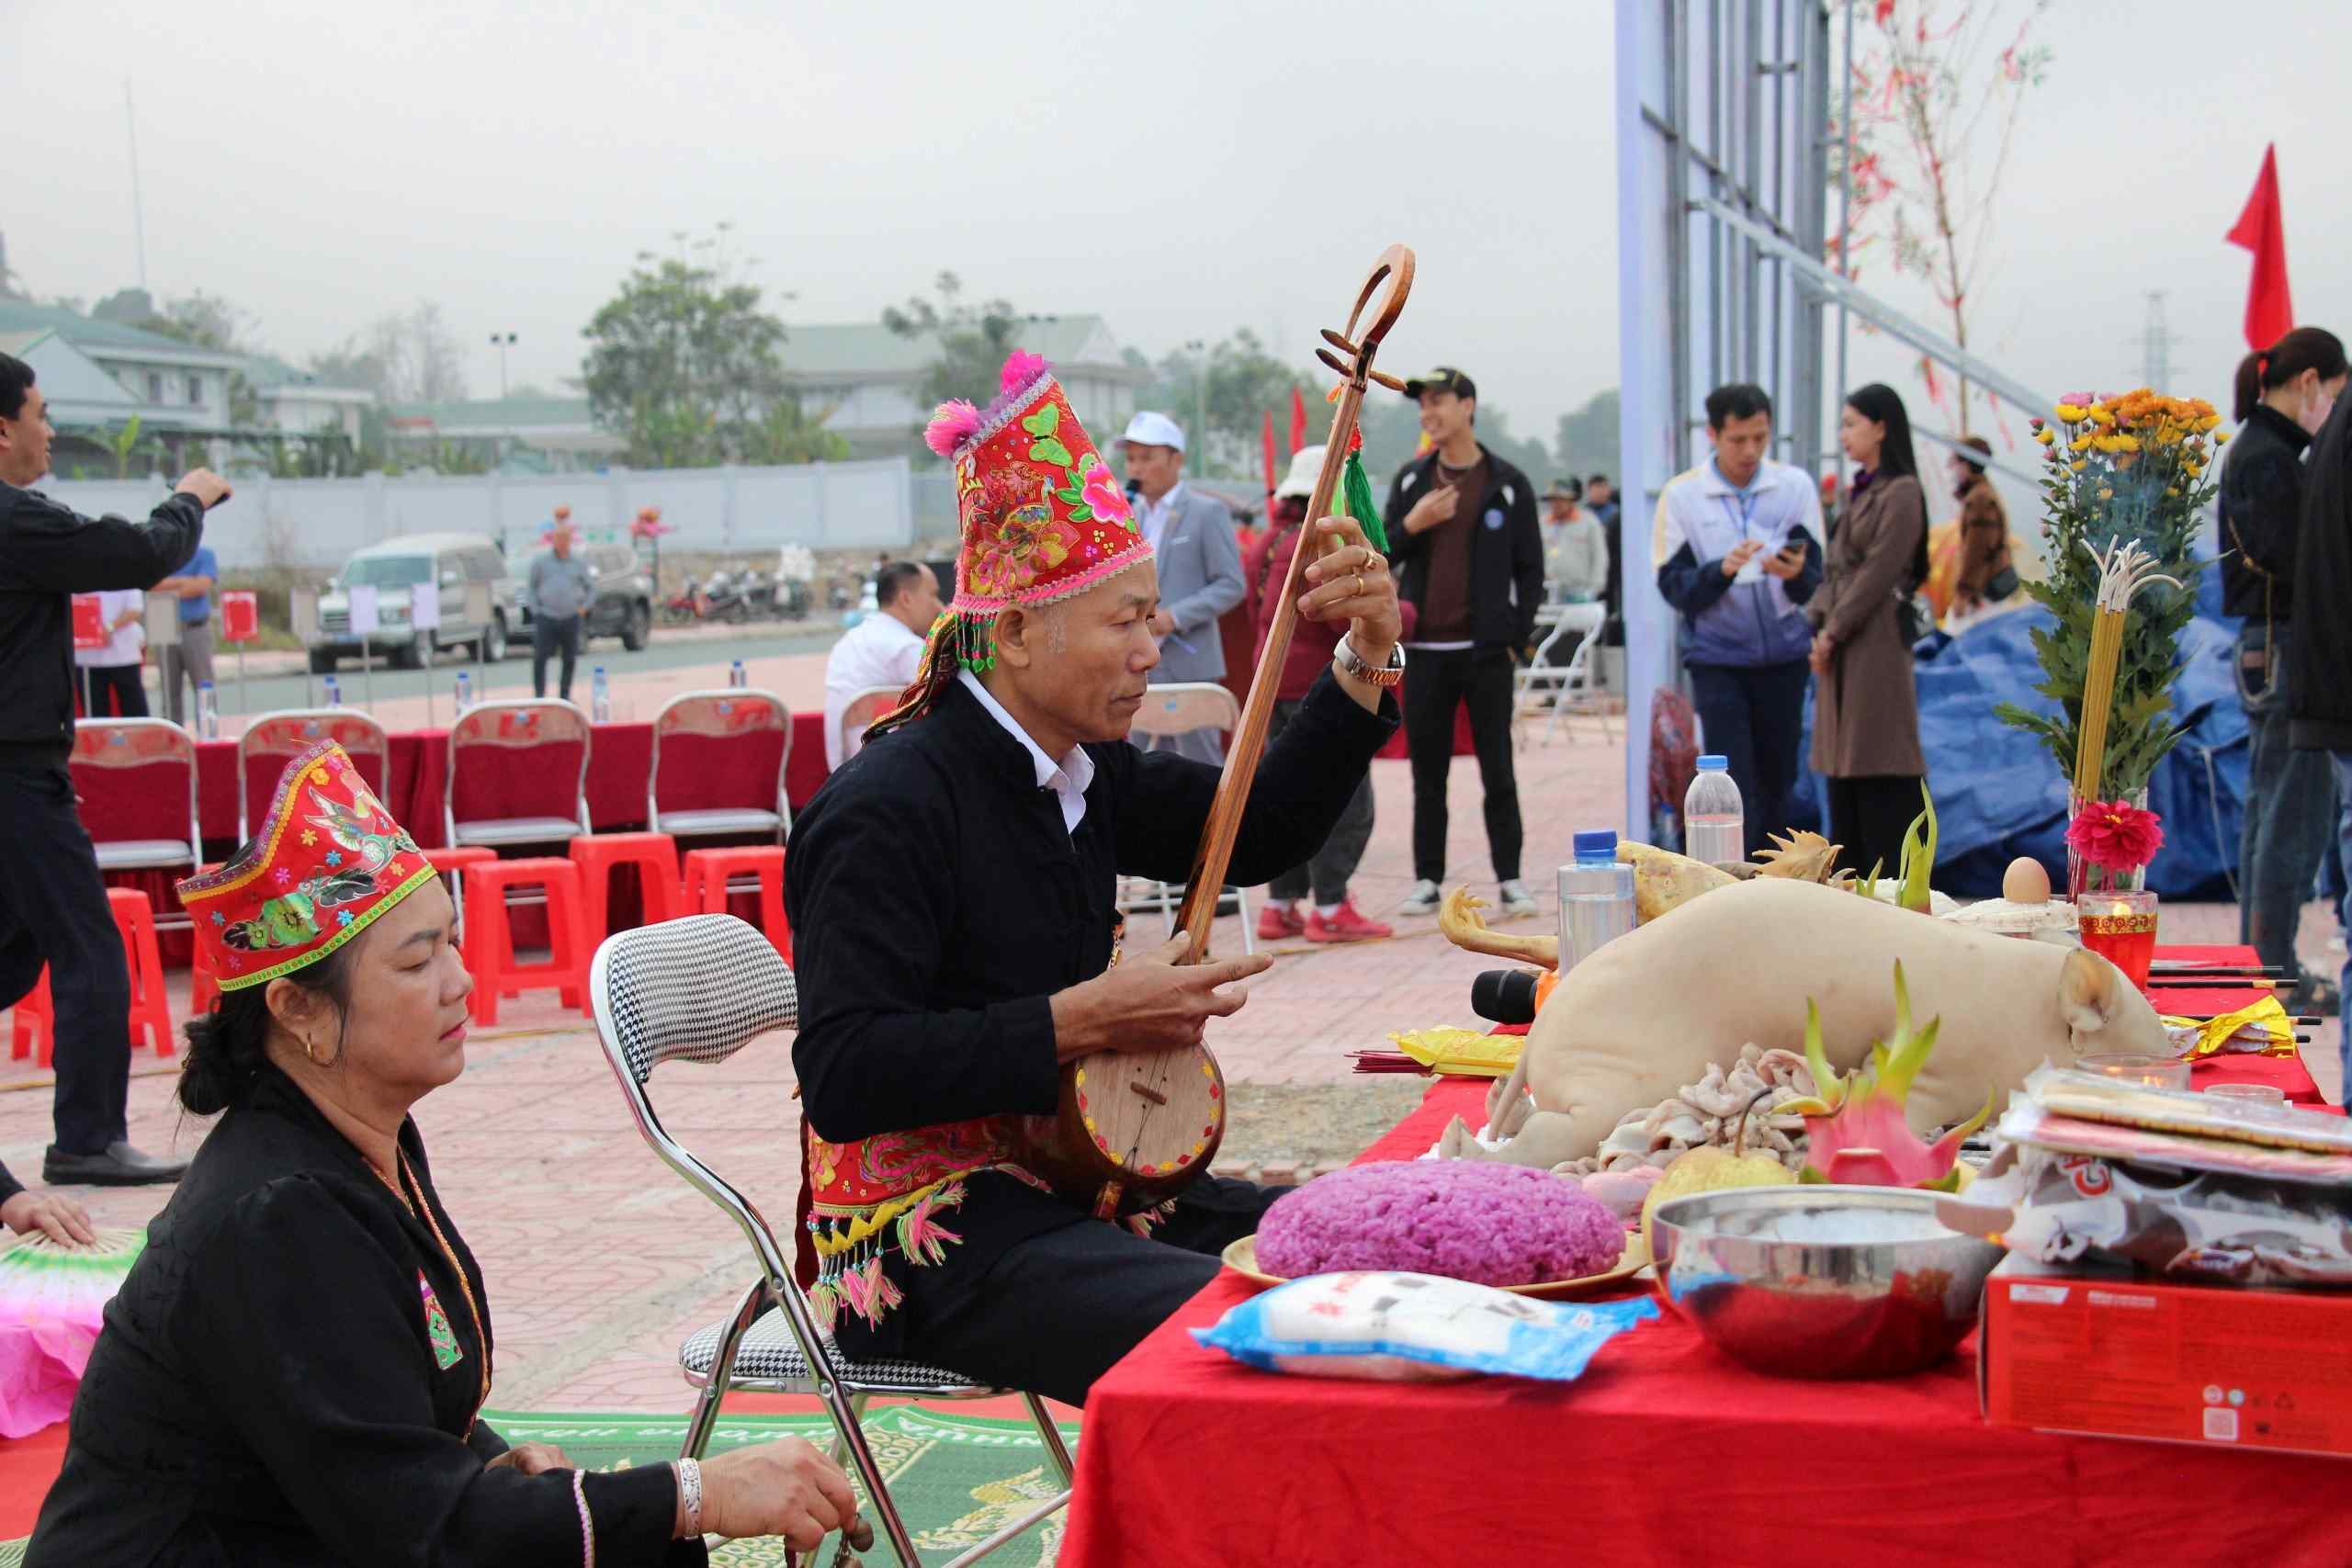 Nghi lễ cúng thần sông được thực hiện trước khi khai mạc lễ hội.